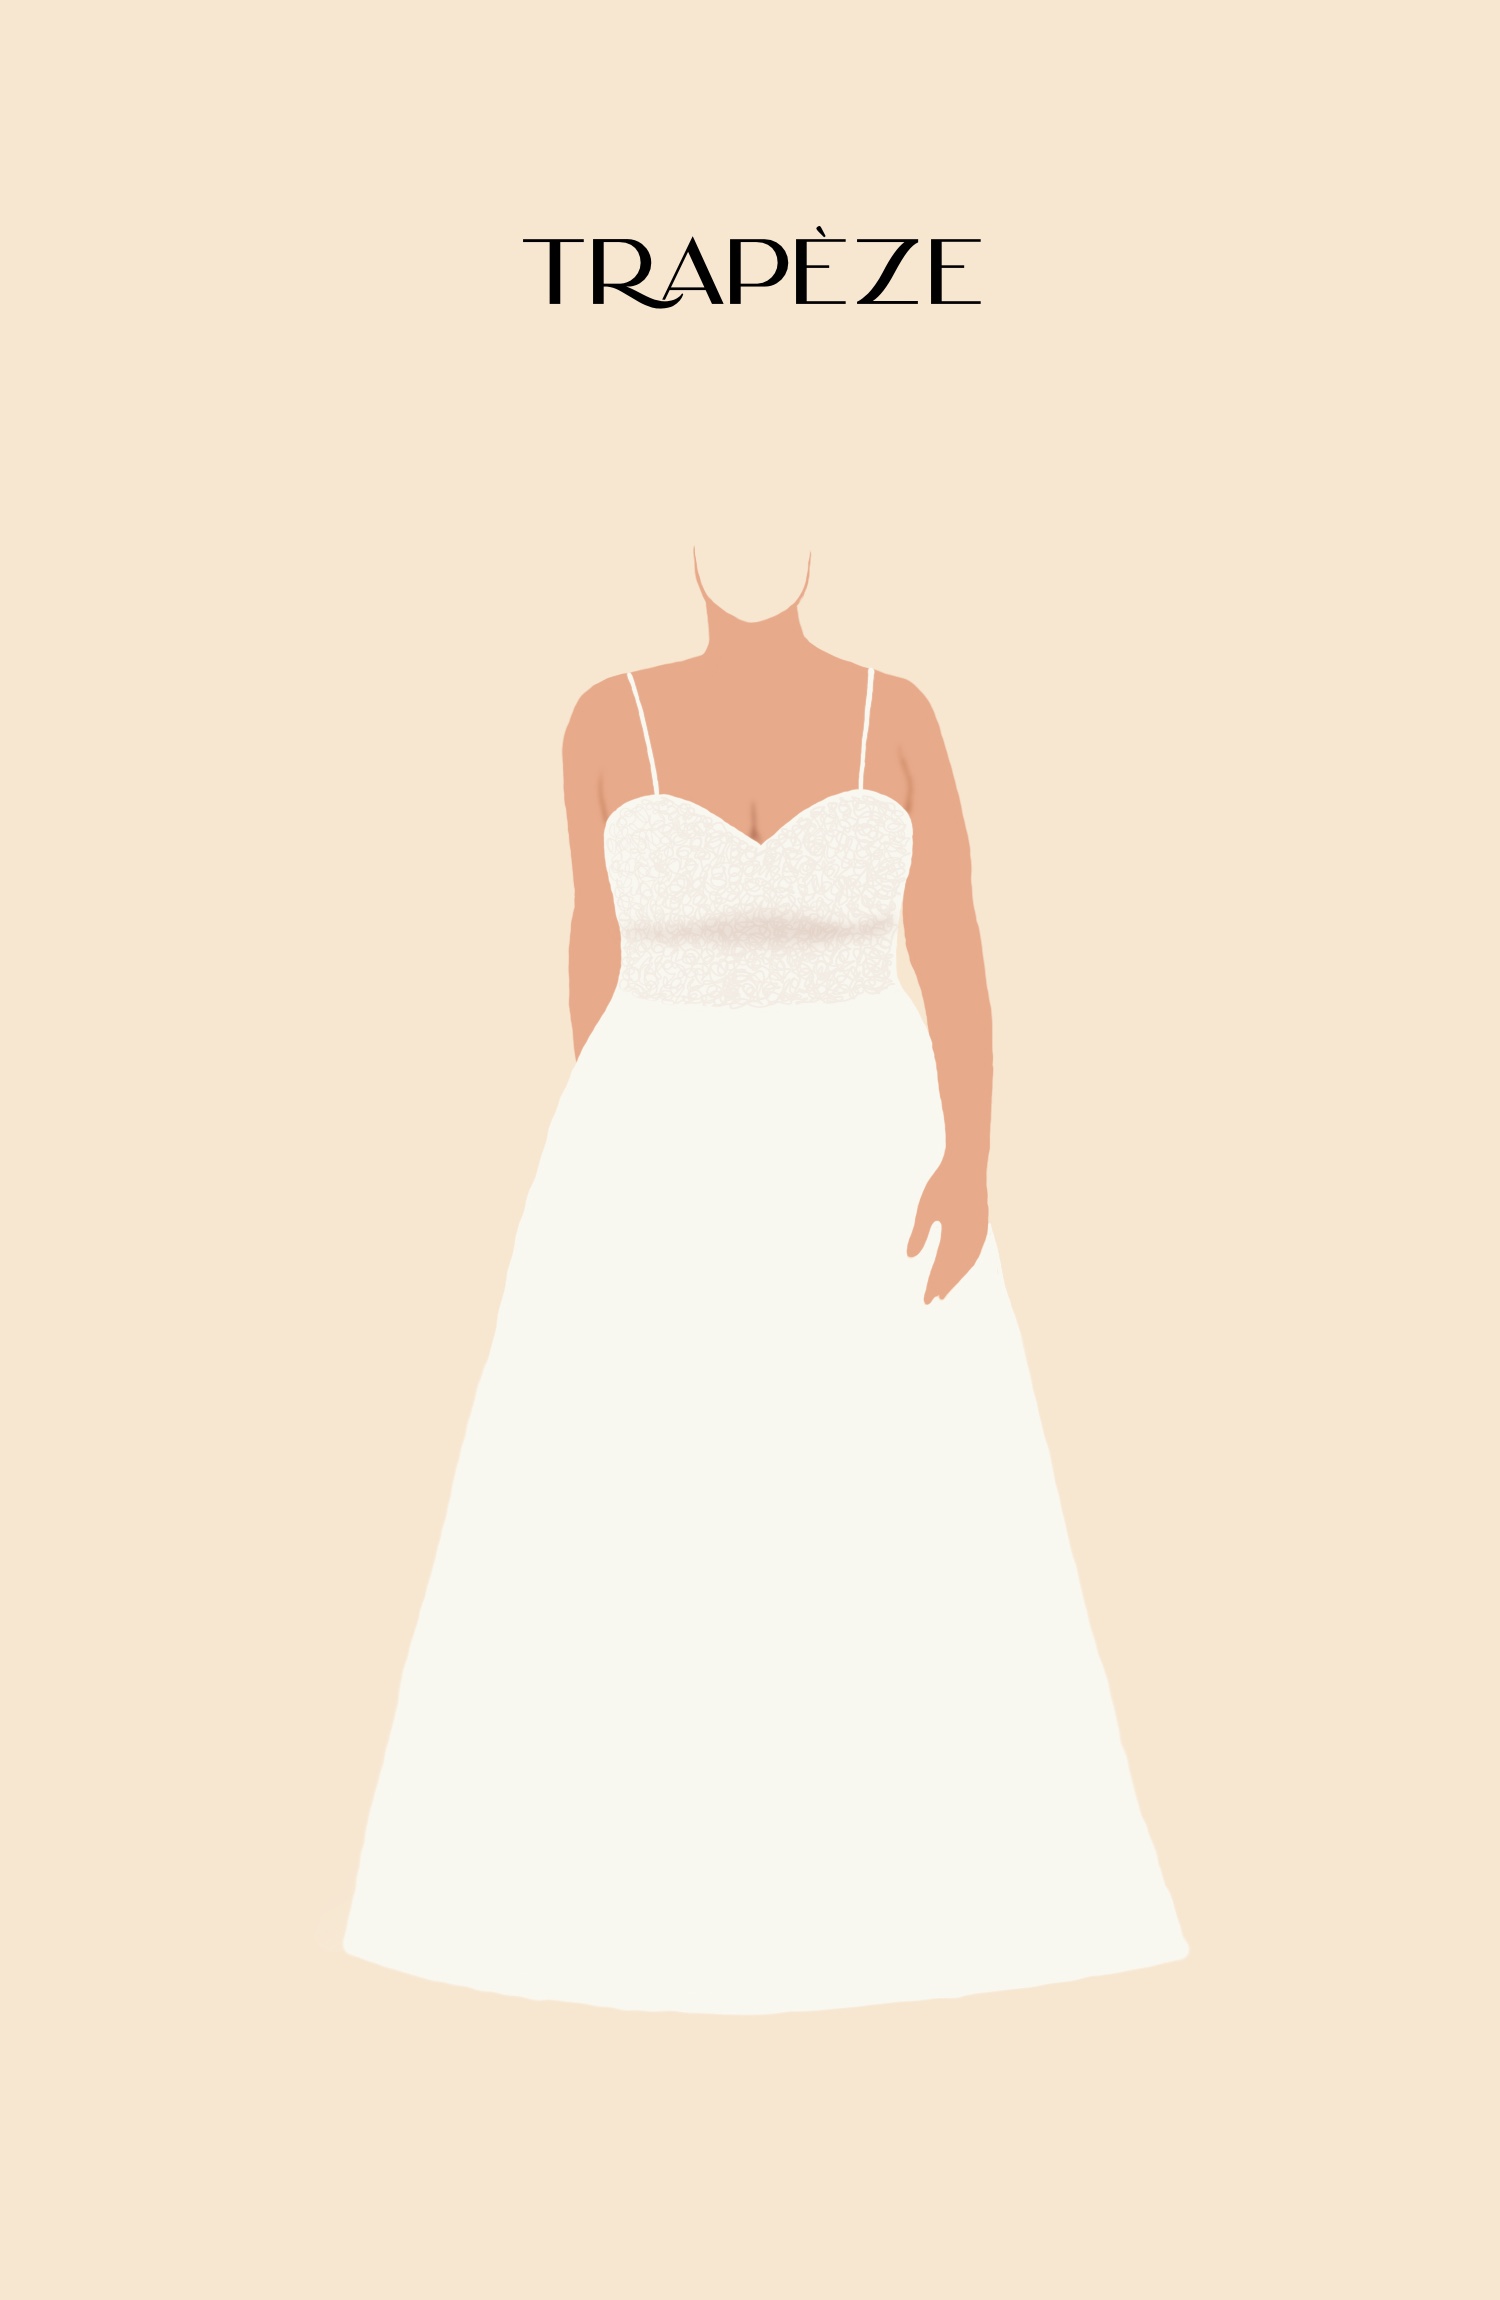 Dessin d'une robe de mariée de silhouette trapèze